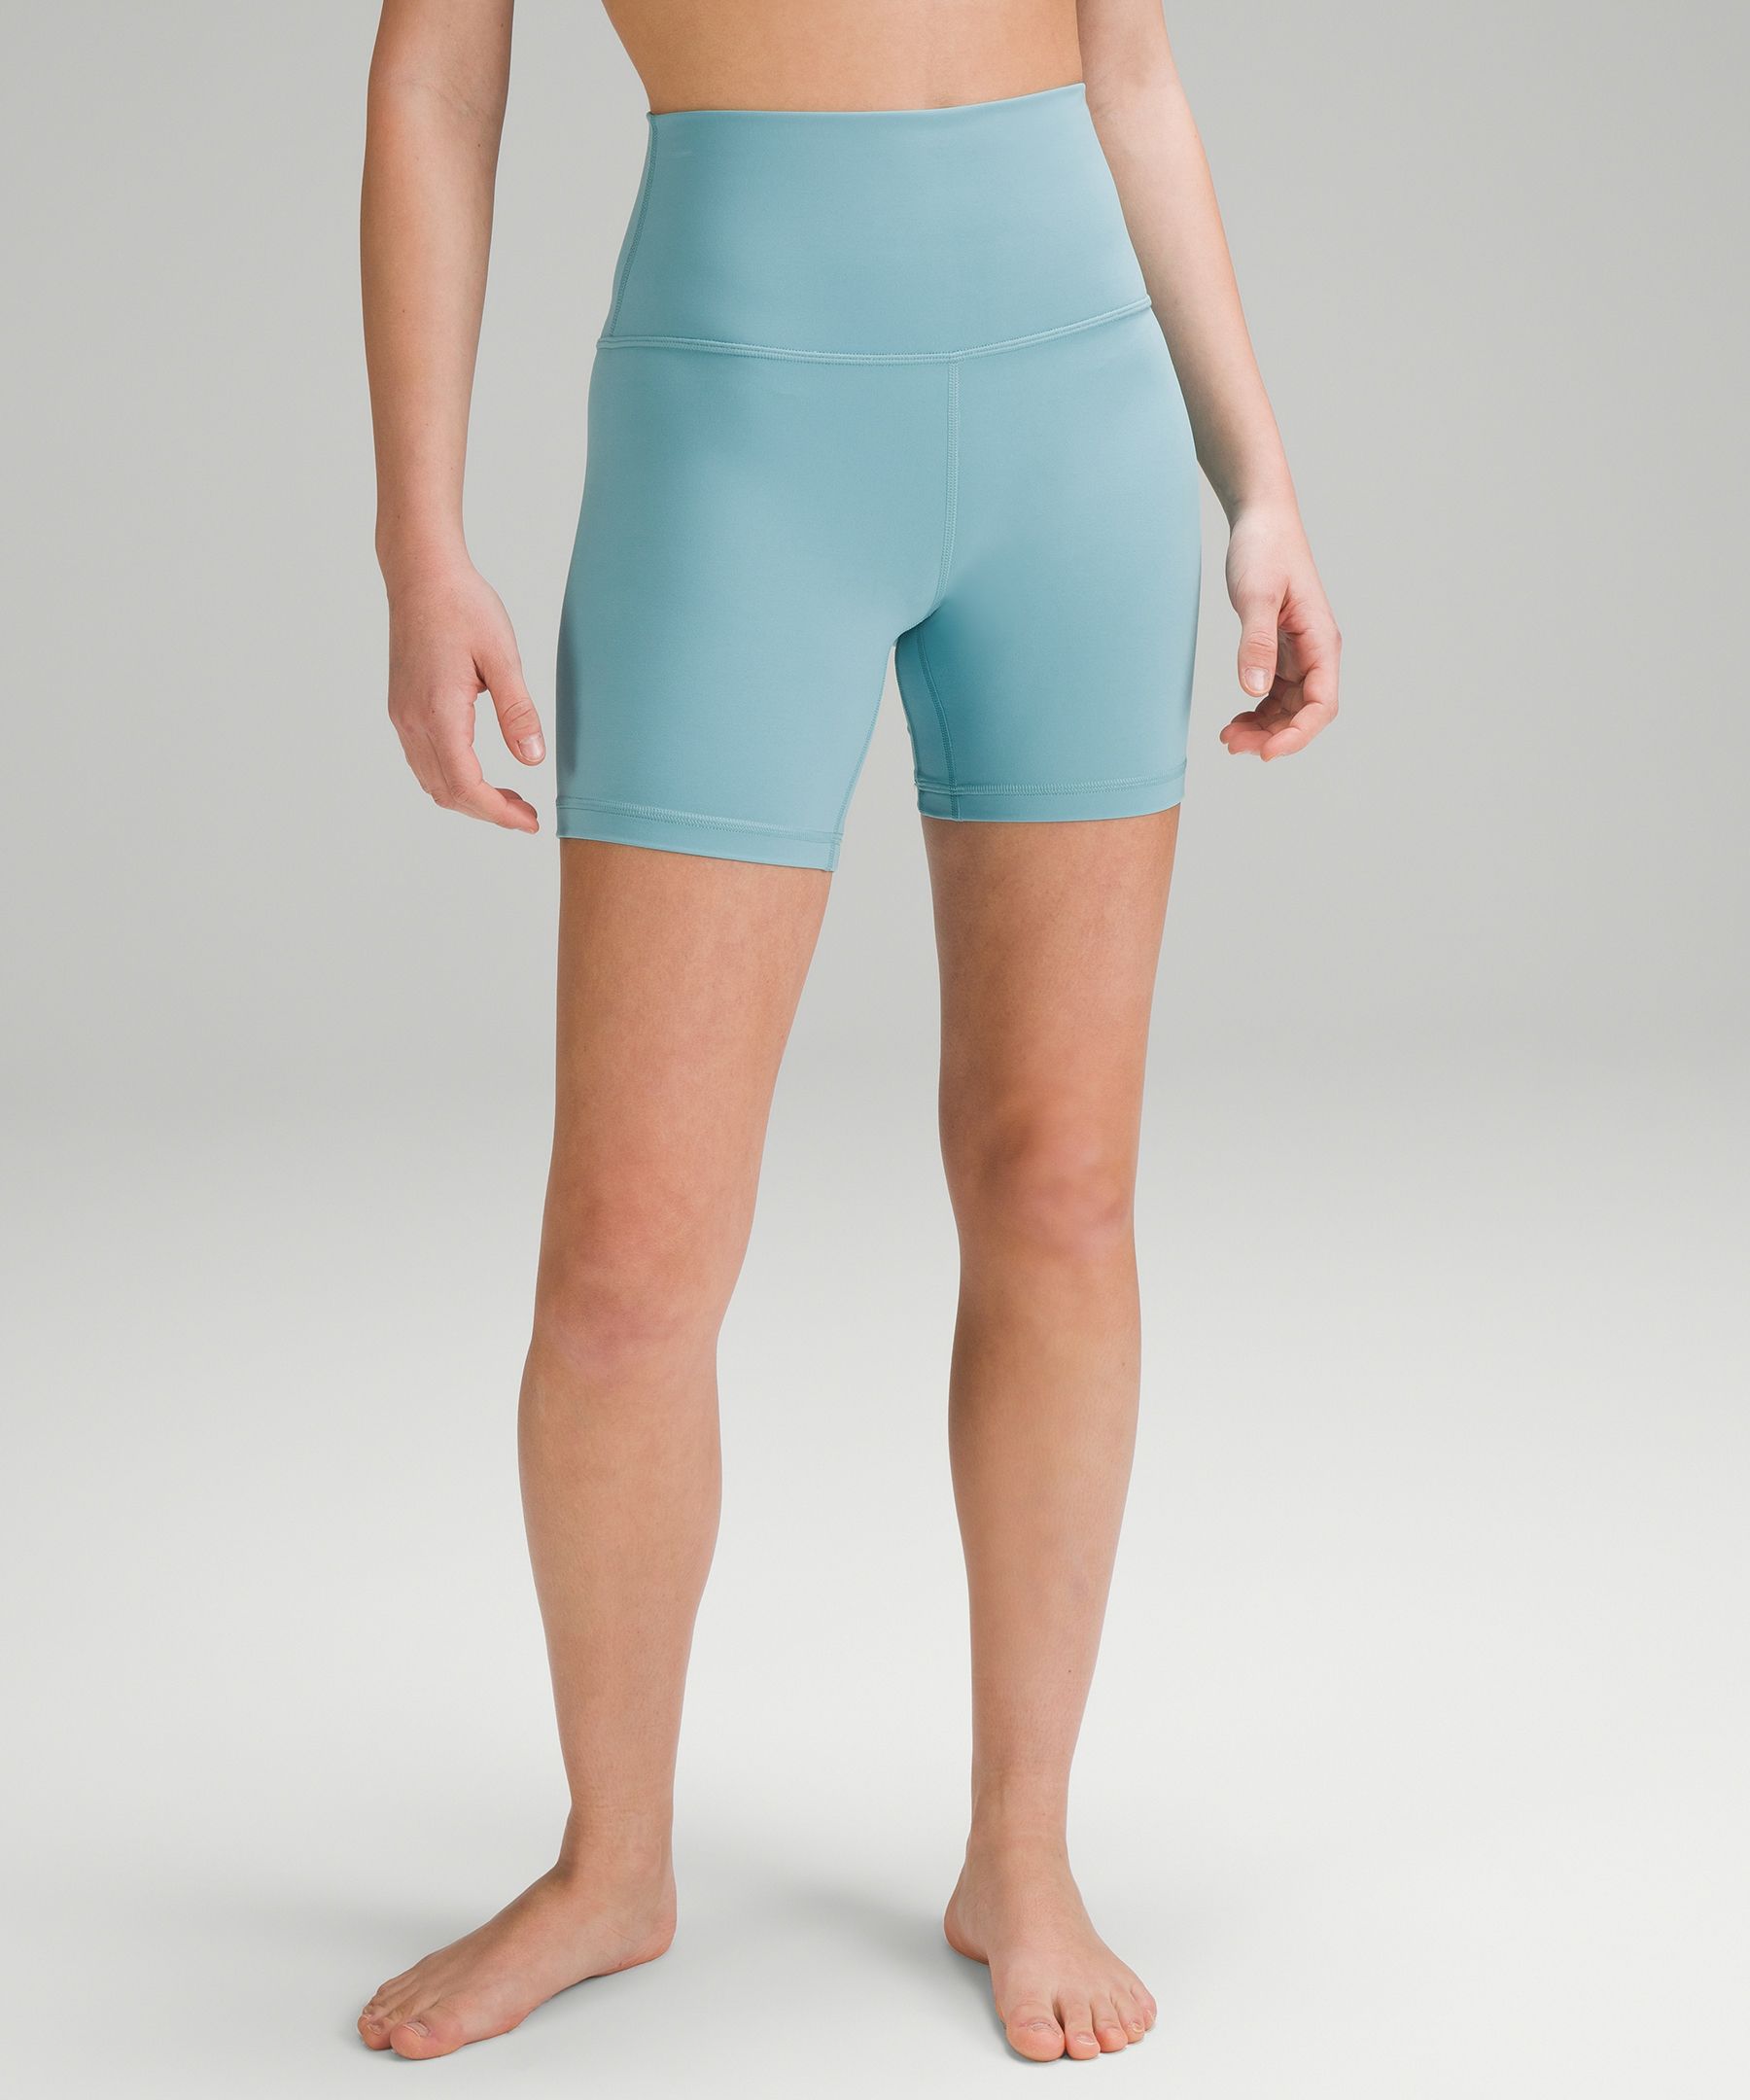 lululemon Align™ High-Rise Short 6 | Women's Shorts | lululemon